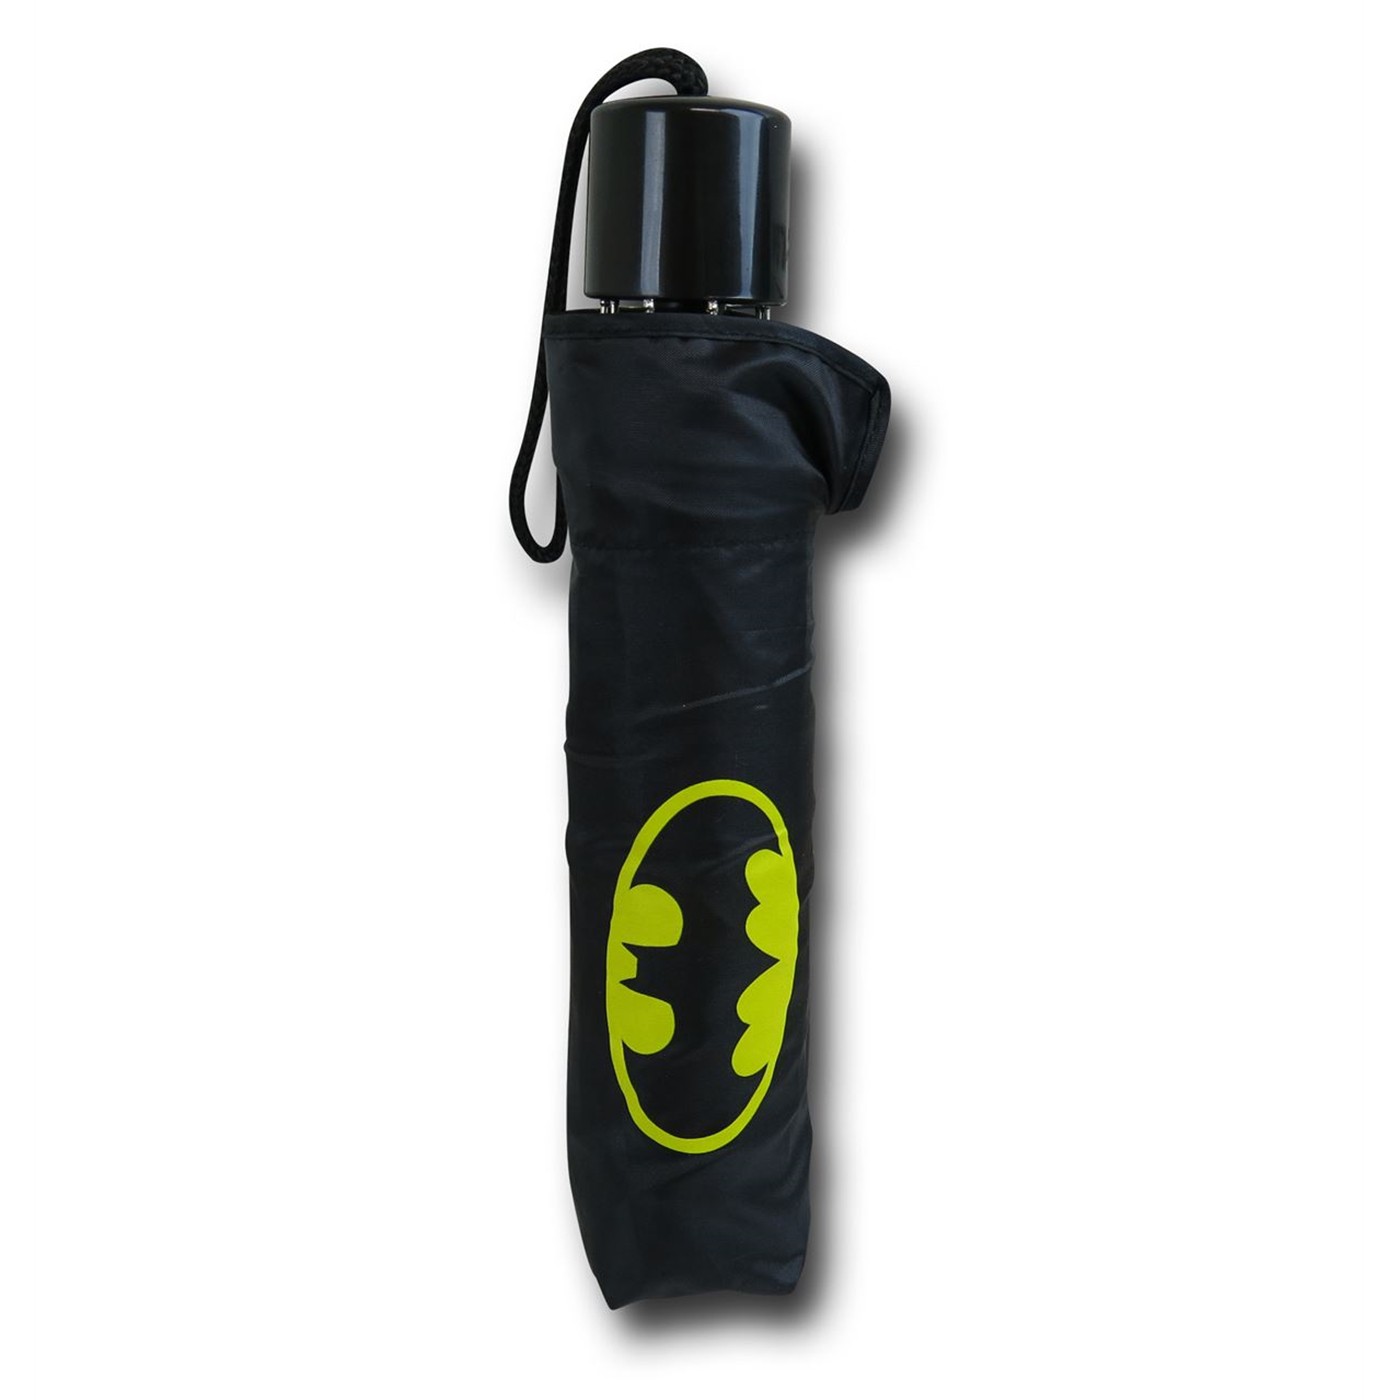 Batman Symbol Umbrella